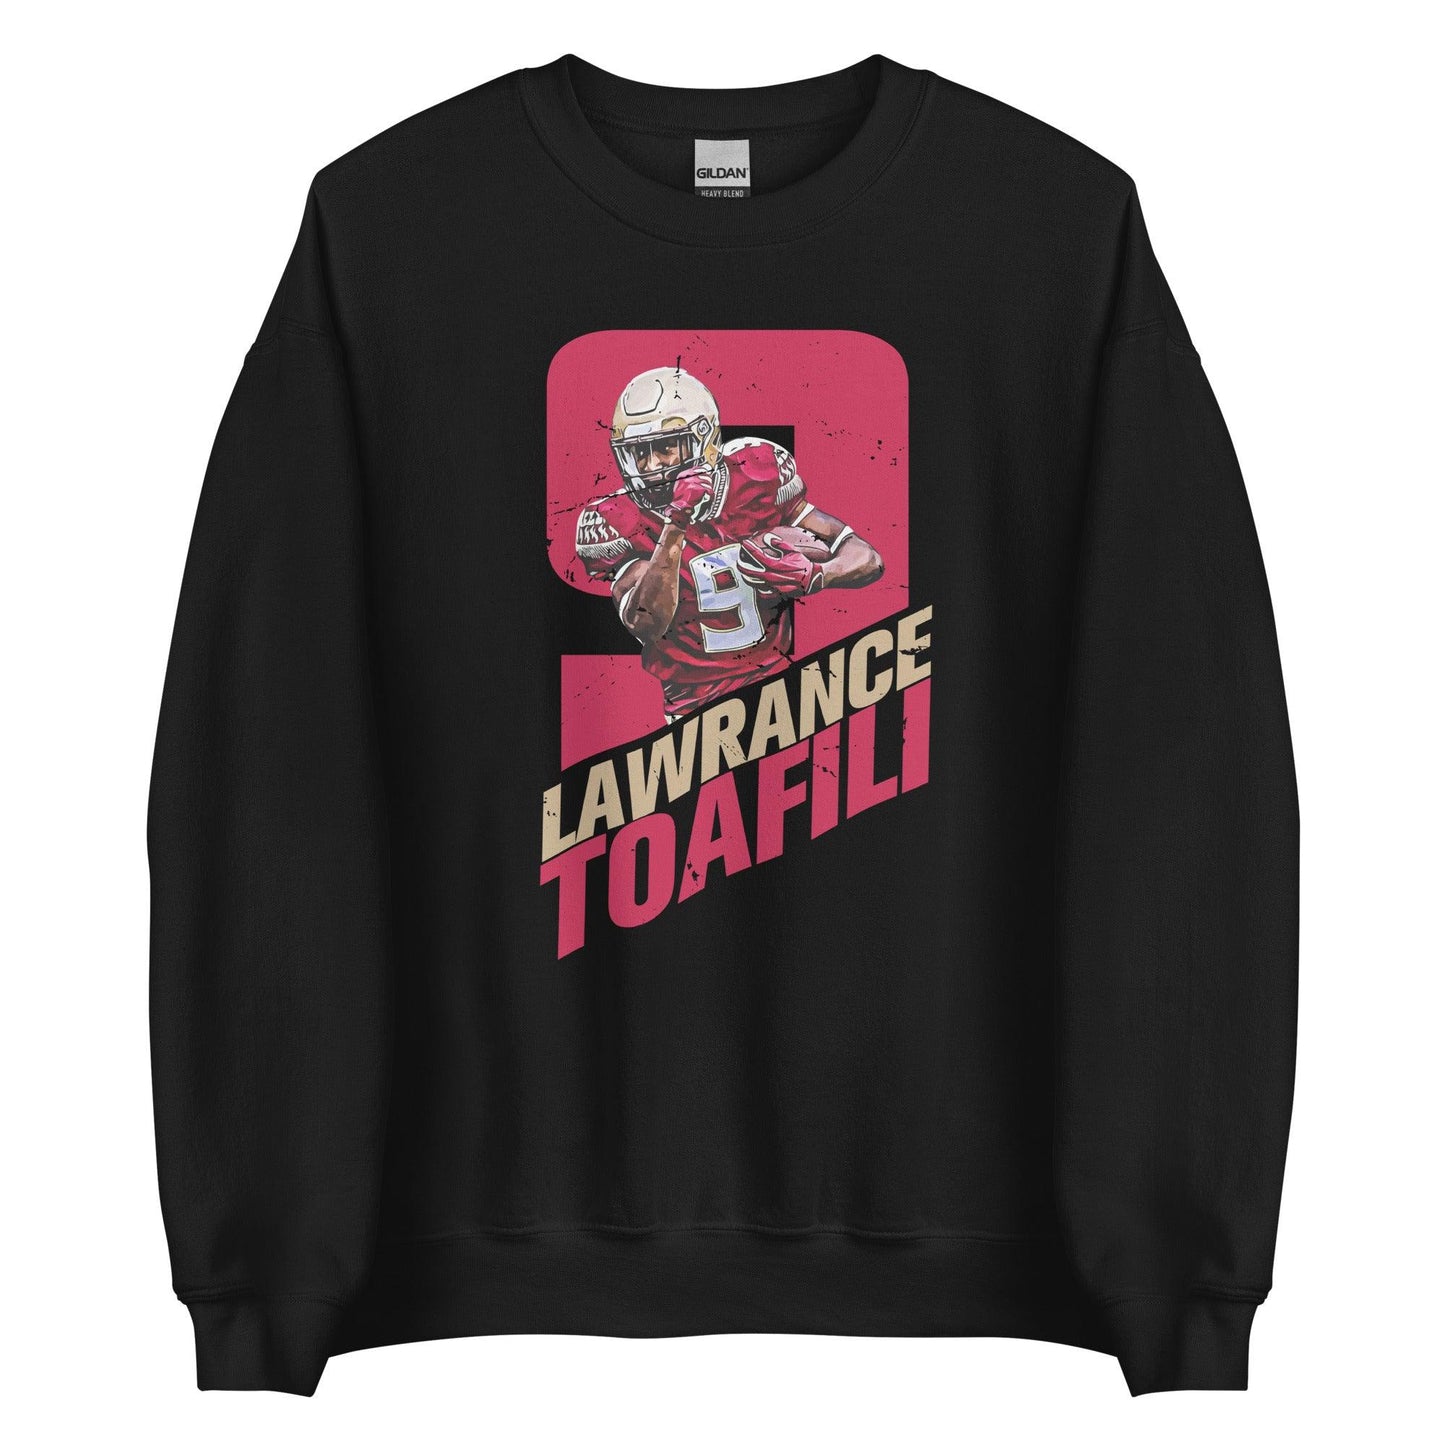 Lawrance Toafili "Run It" Sweatshirt - Fan Arch